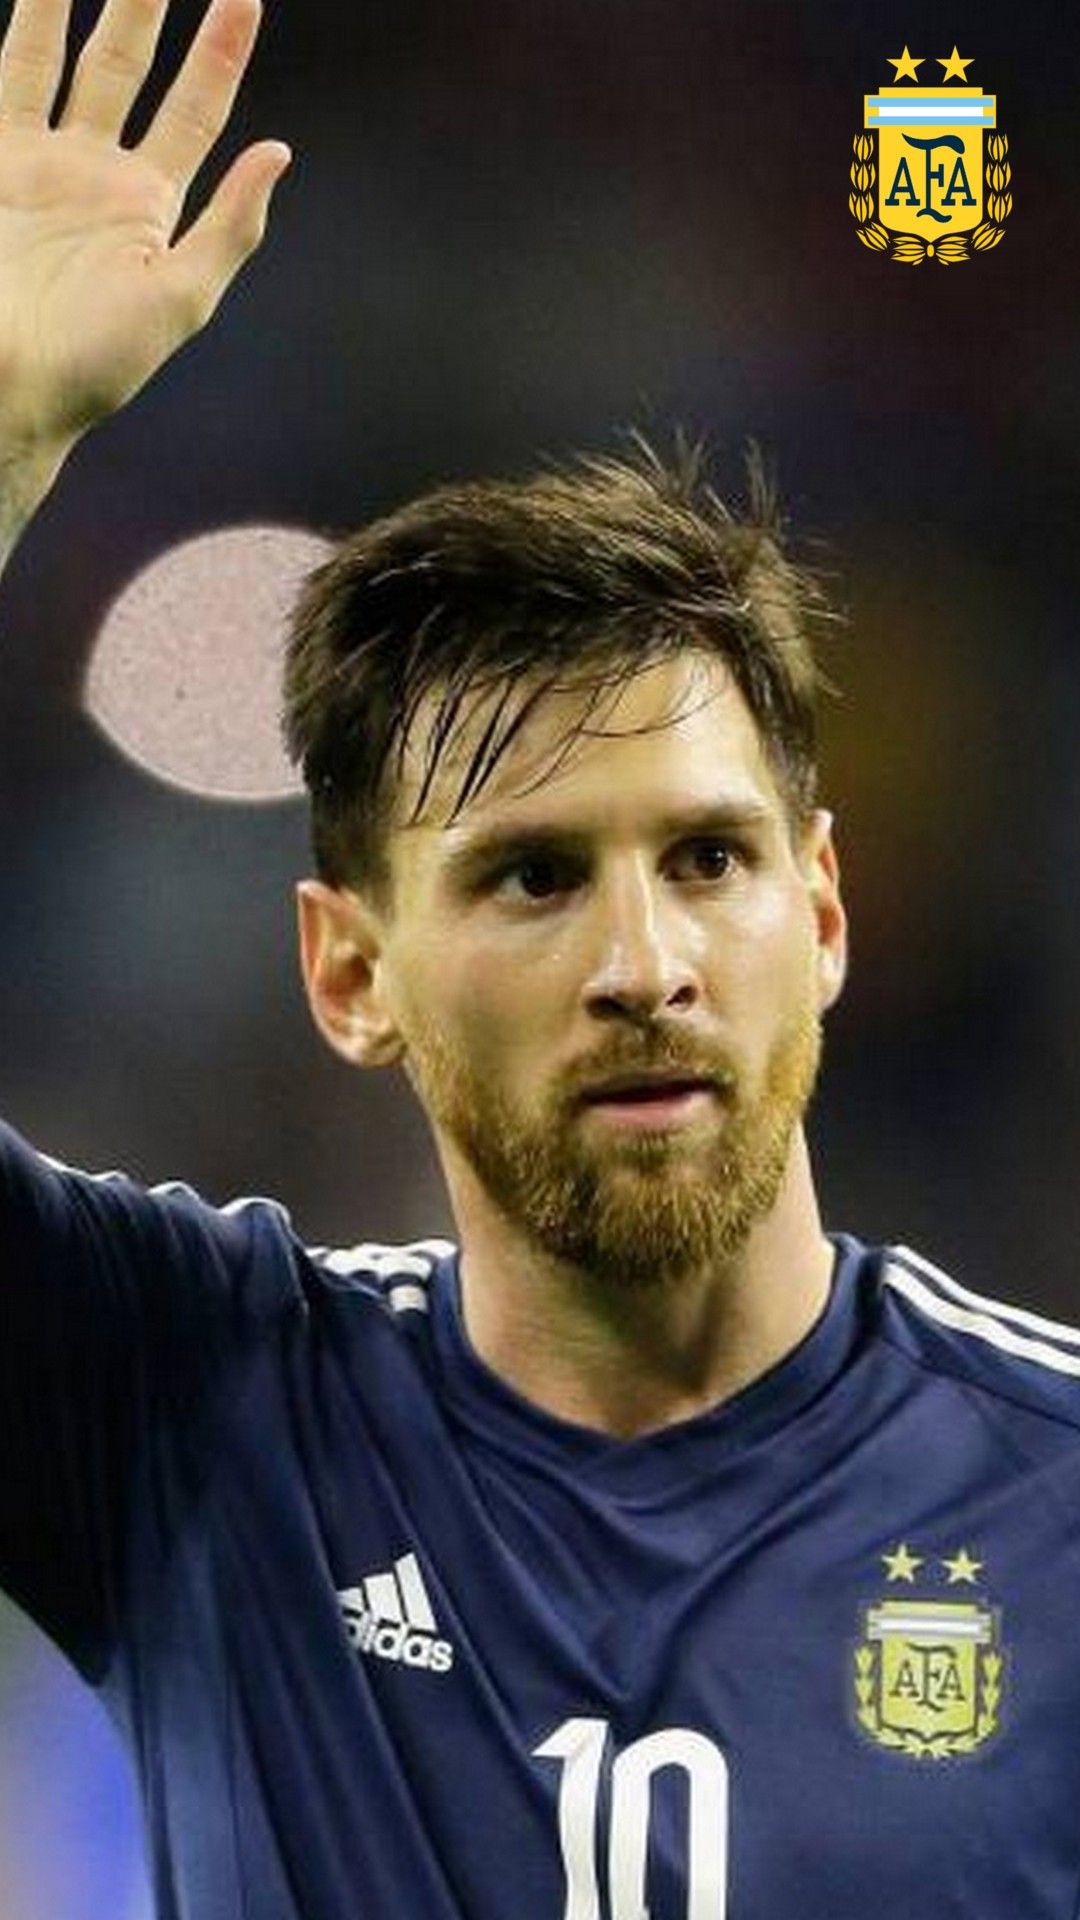 Lock Screen Wallpaper Of Messi